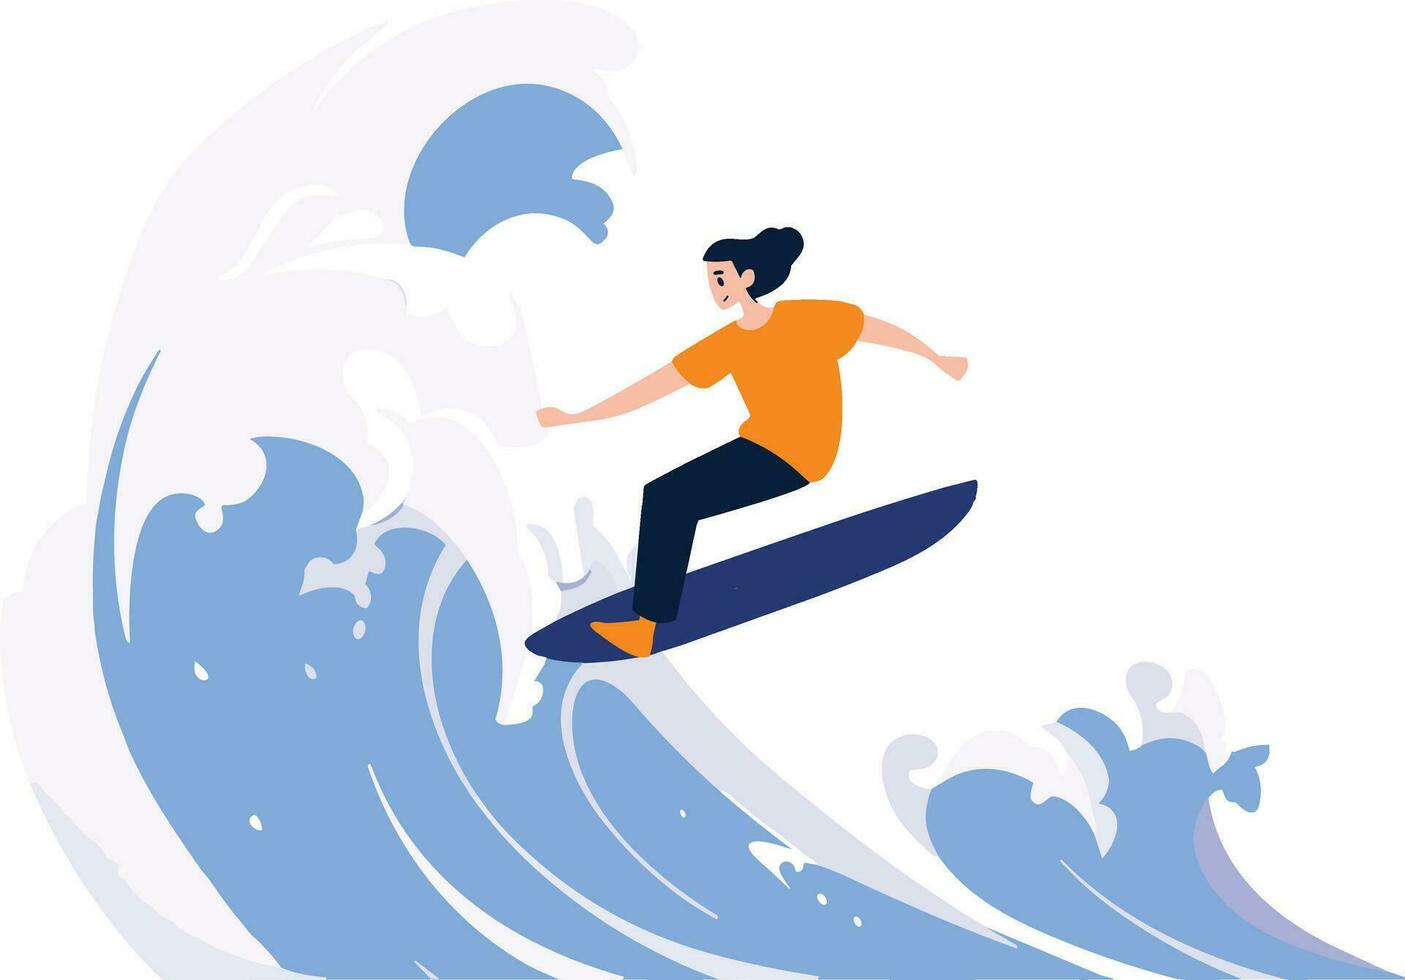 mano disegnato turista adolescente personaggi siamo giocando tavole da surf a il mare nel piatto stile vettore